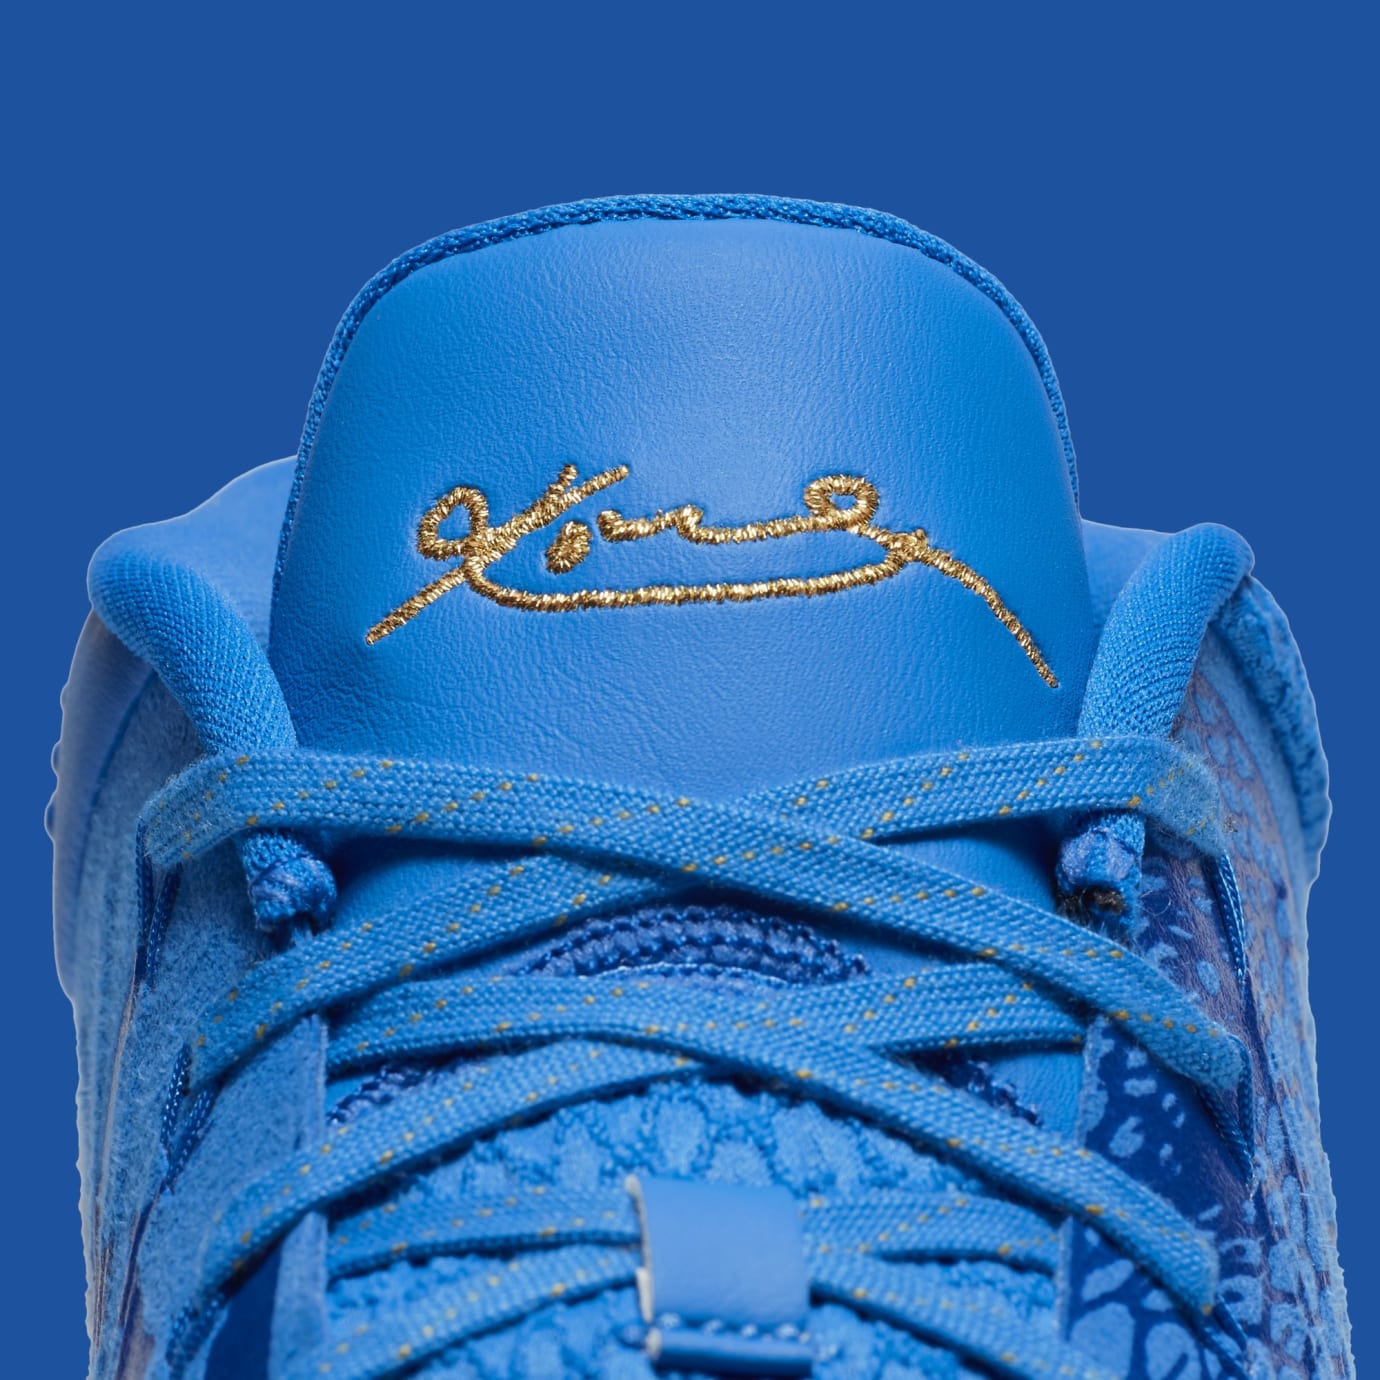 Nike Kobe A.D. DeMar DeRozan Blue